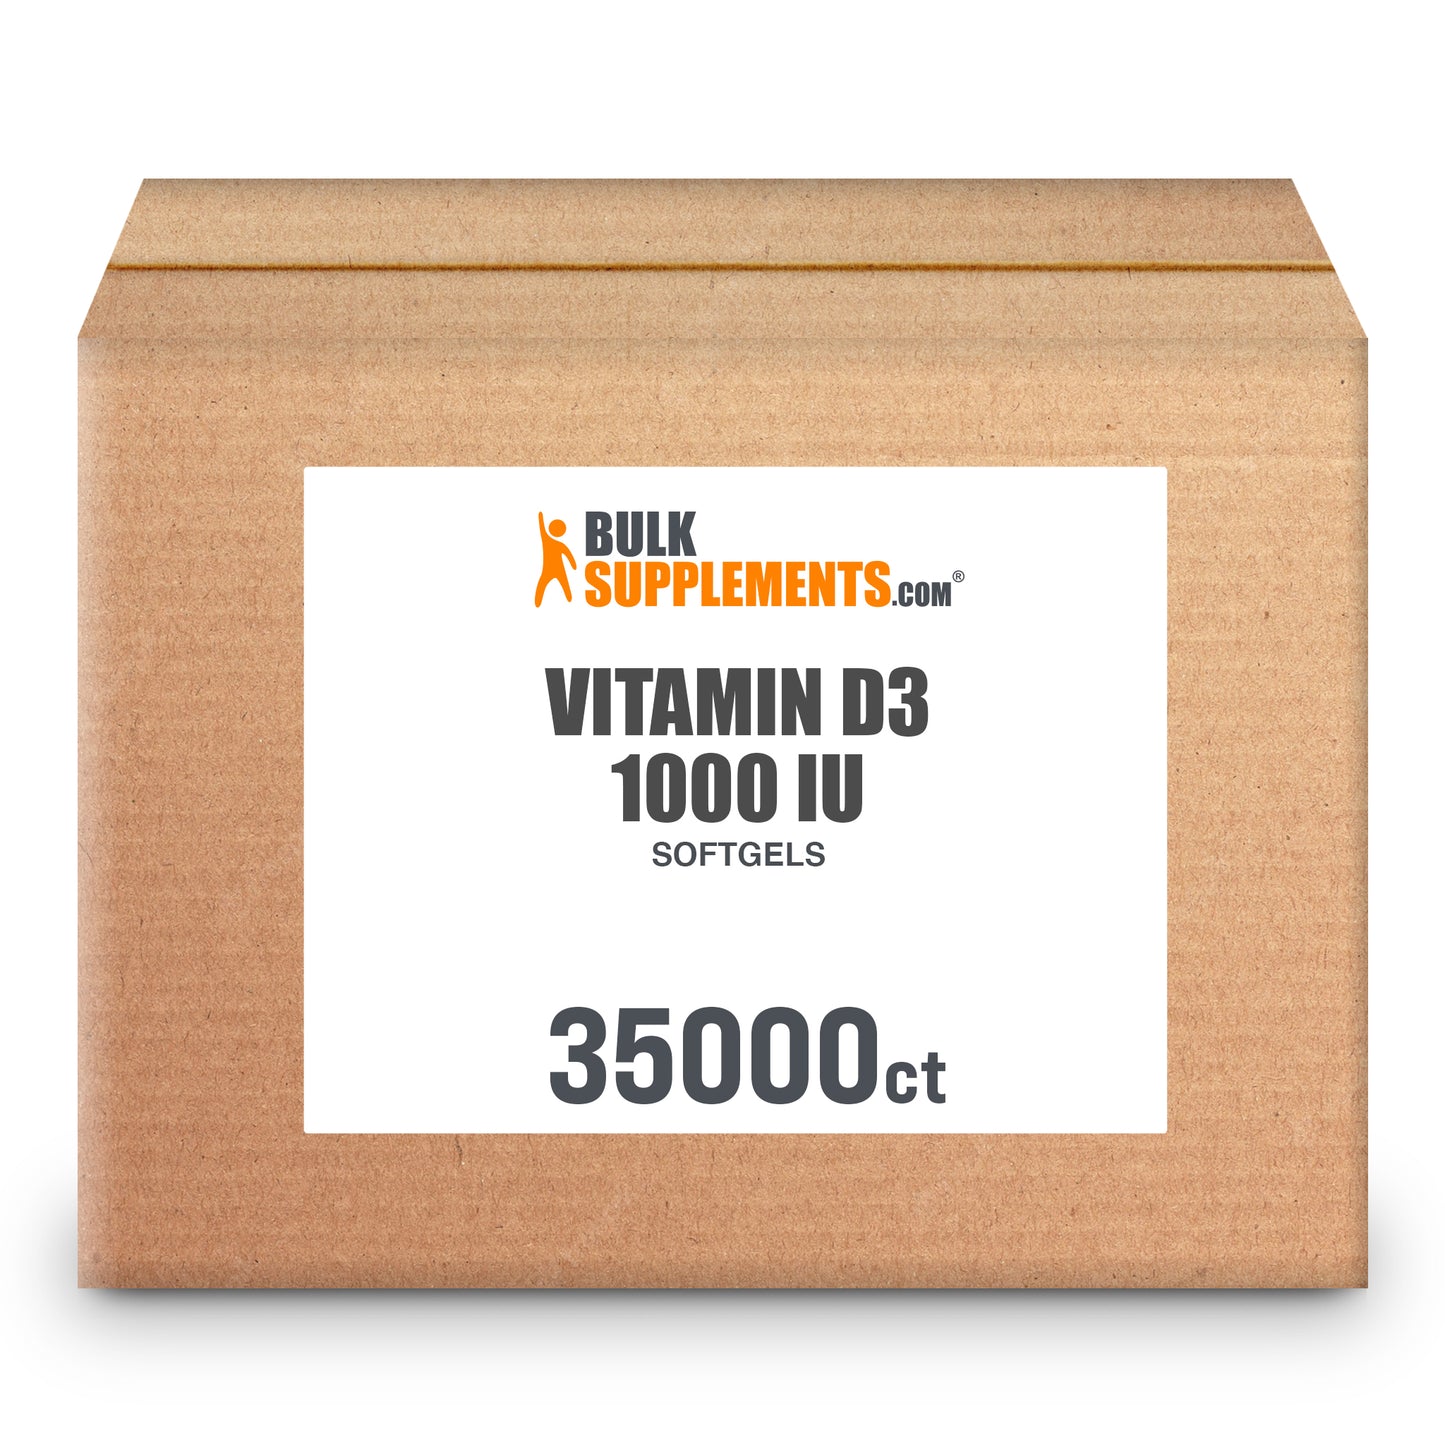 Vitamin D3 Softgels 1000 IU 35,000 ct box